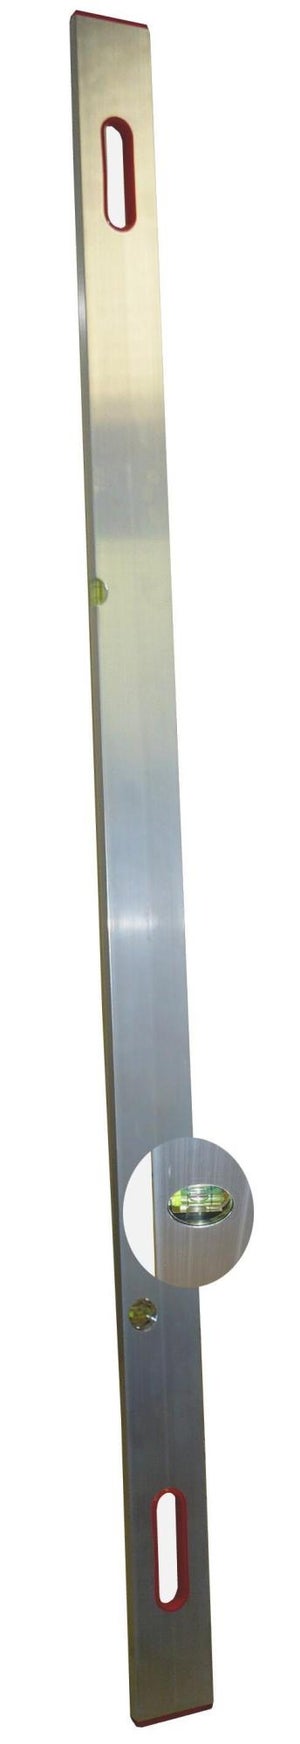 Coupe-papier avec grille A4 et règle art. 870011 coupe-levier guillotine